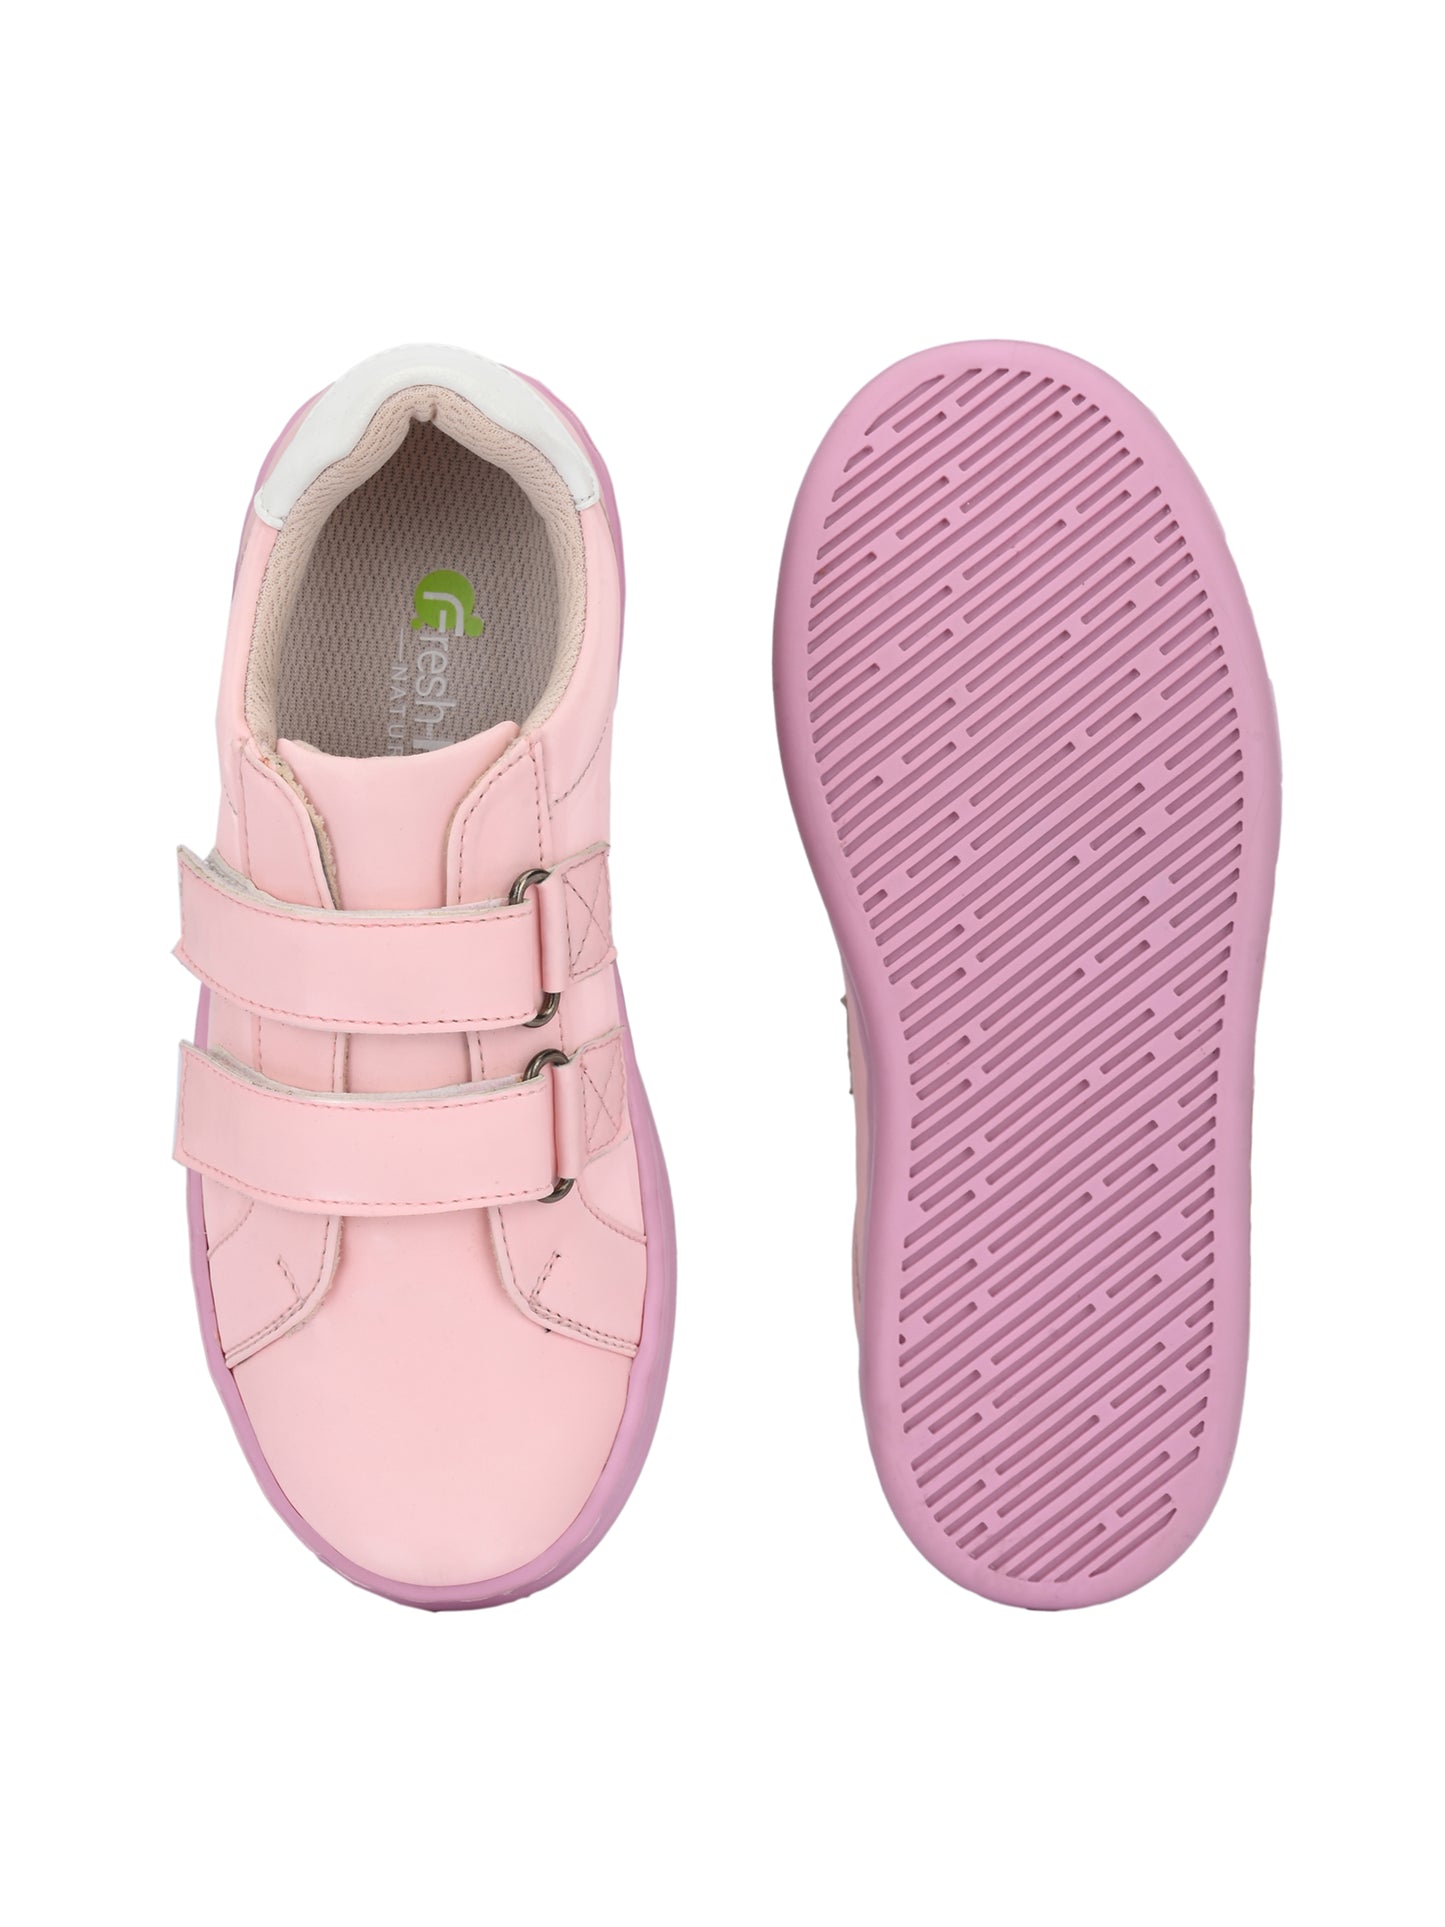 Chloe Pink Sneakers for Kids